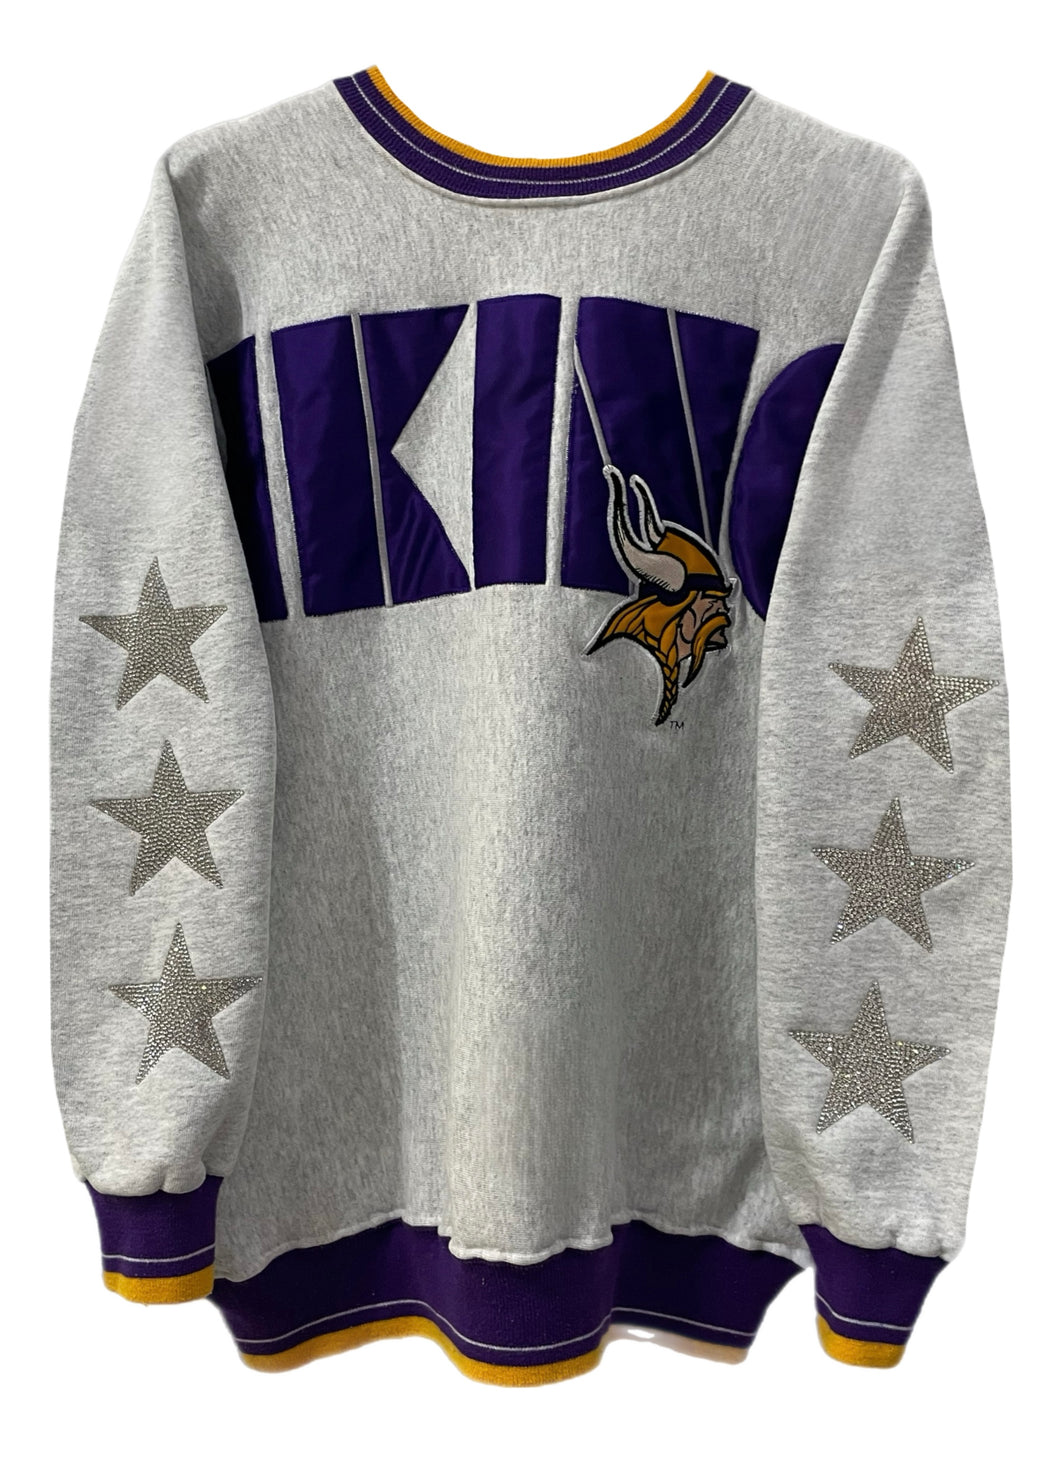 Minnesota Vikings, NFL One of a KIND Vintage Sweatshirt with Three Crystal Star Design